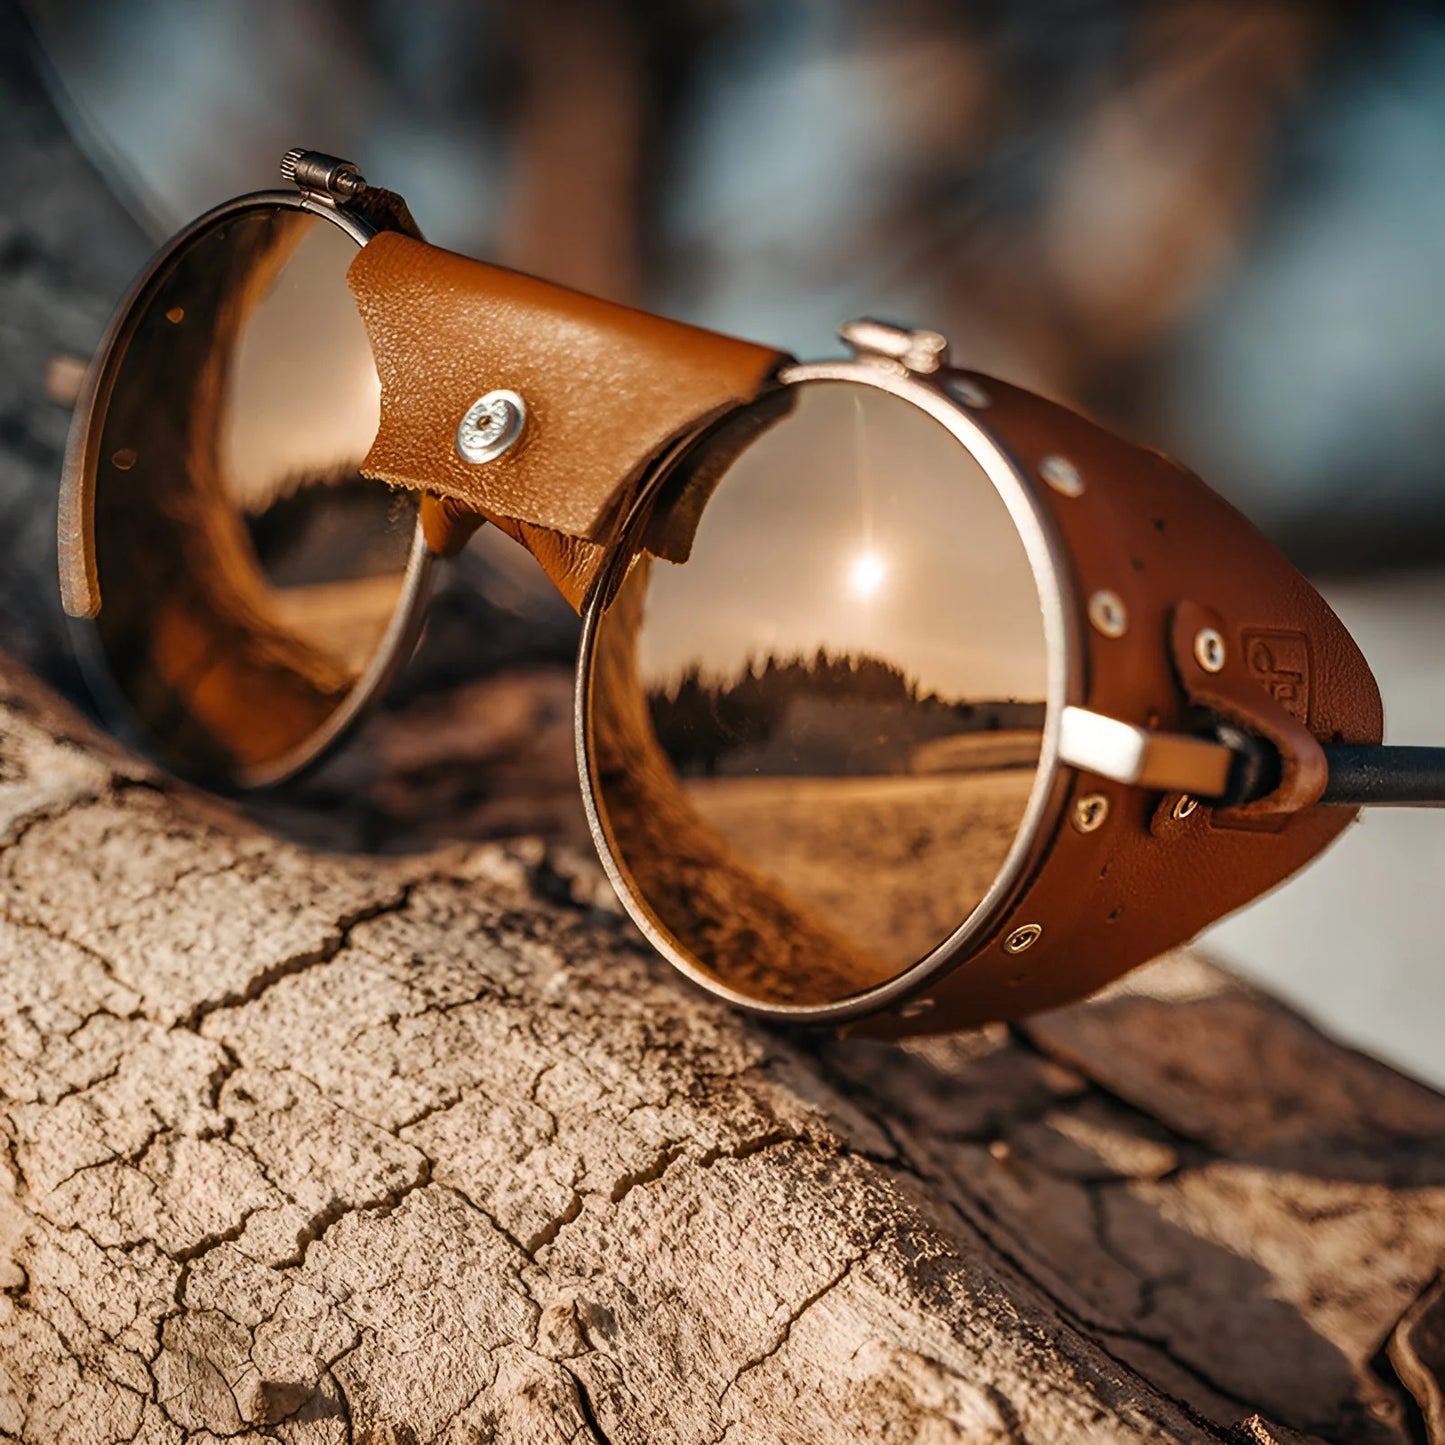 Julbo Vermont Classic Sunglasses | Size 51